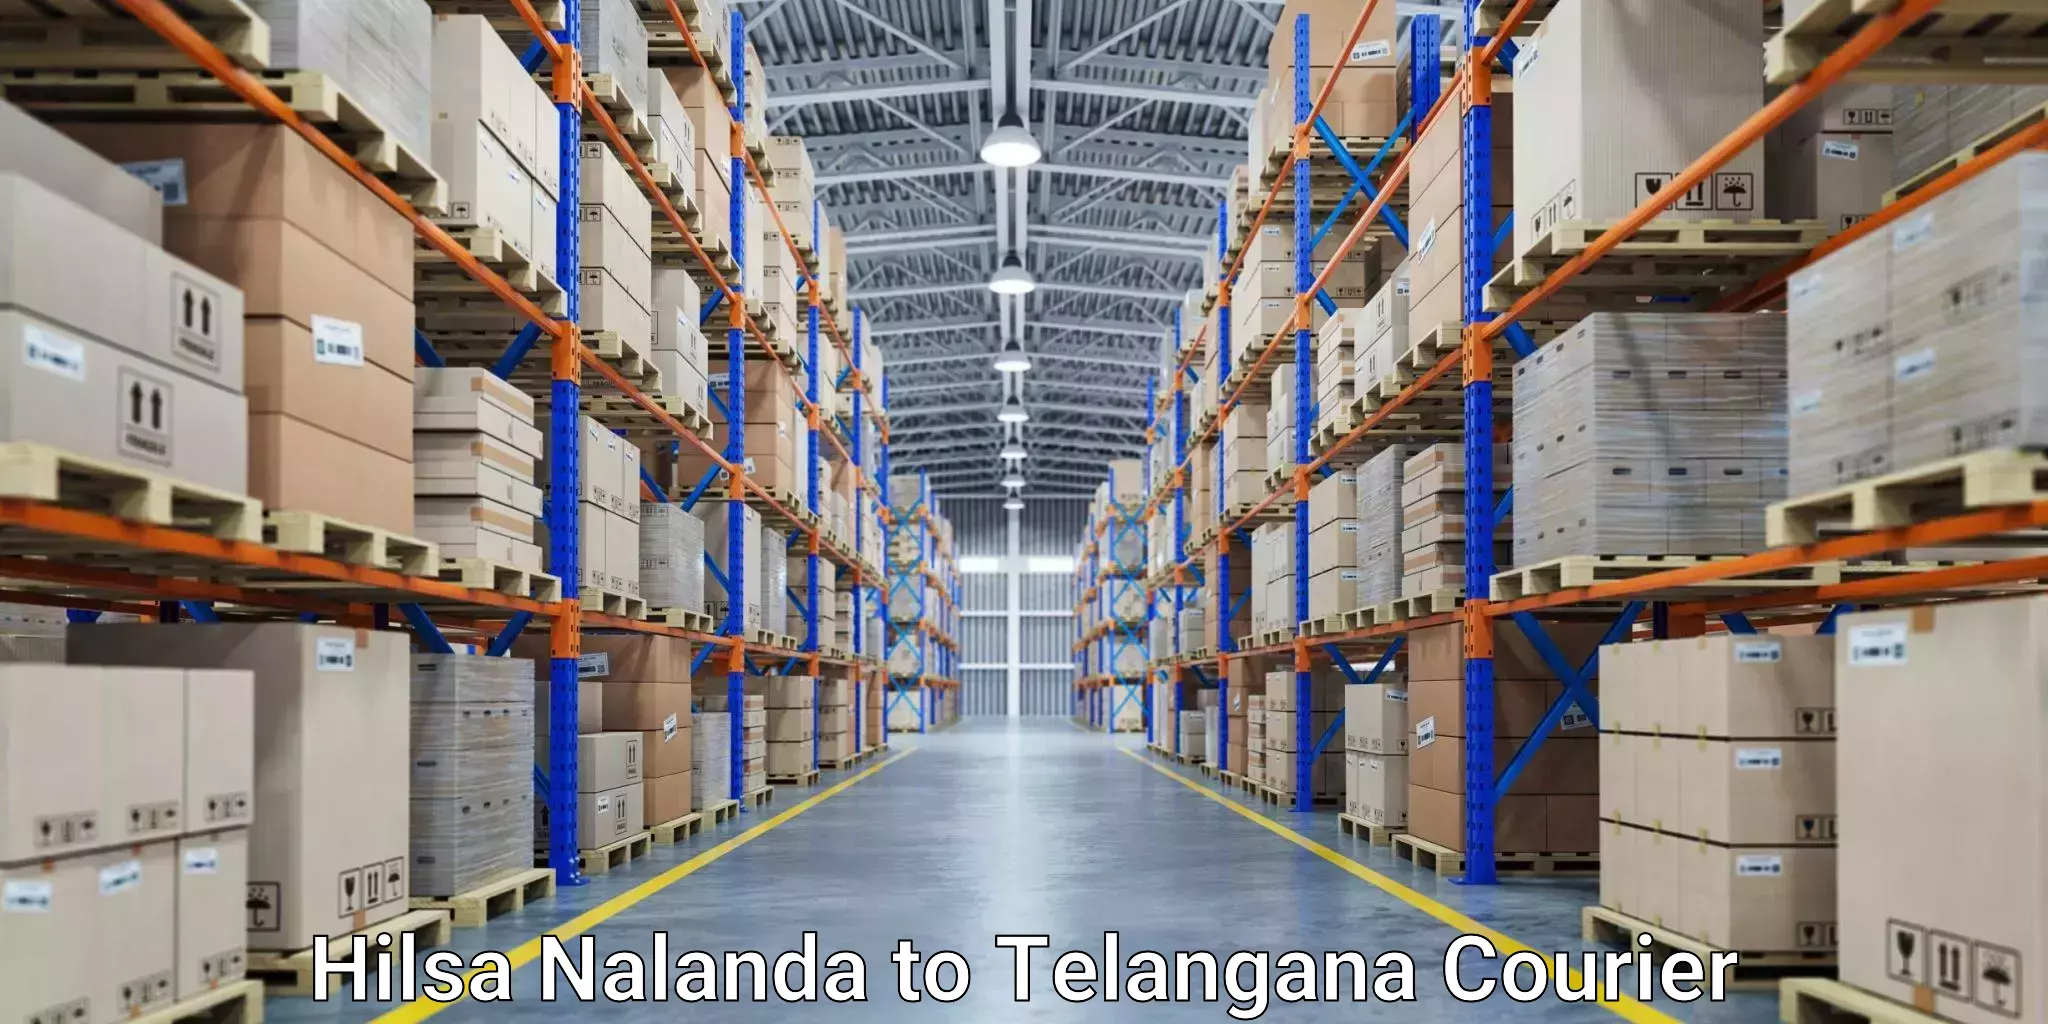 Reliable freight solutions Hilsa Nalanda to Madgulapally